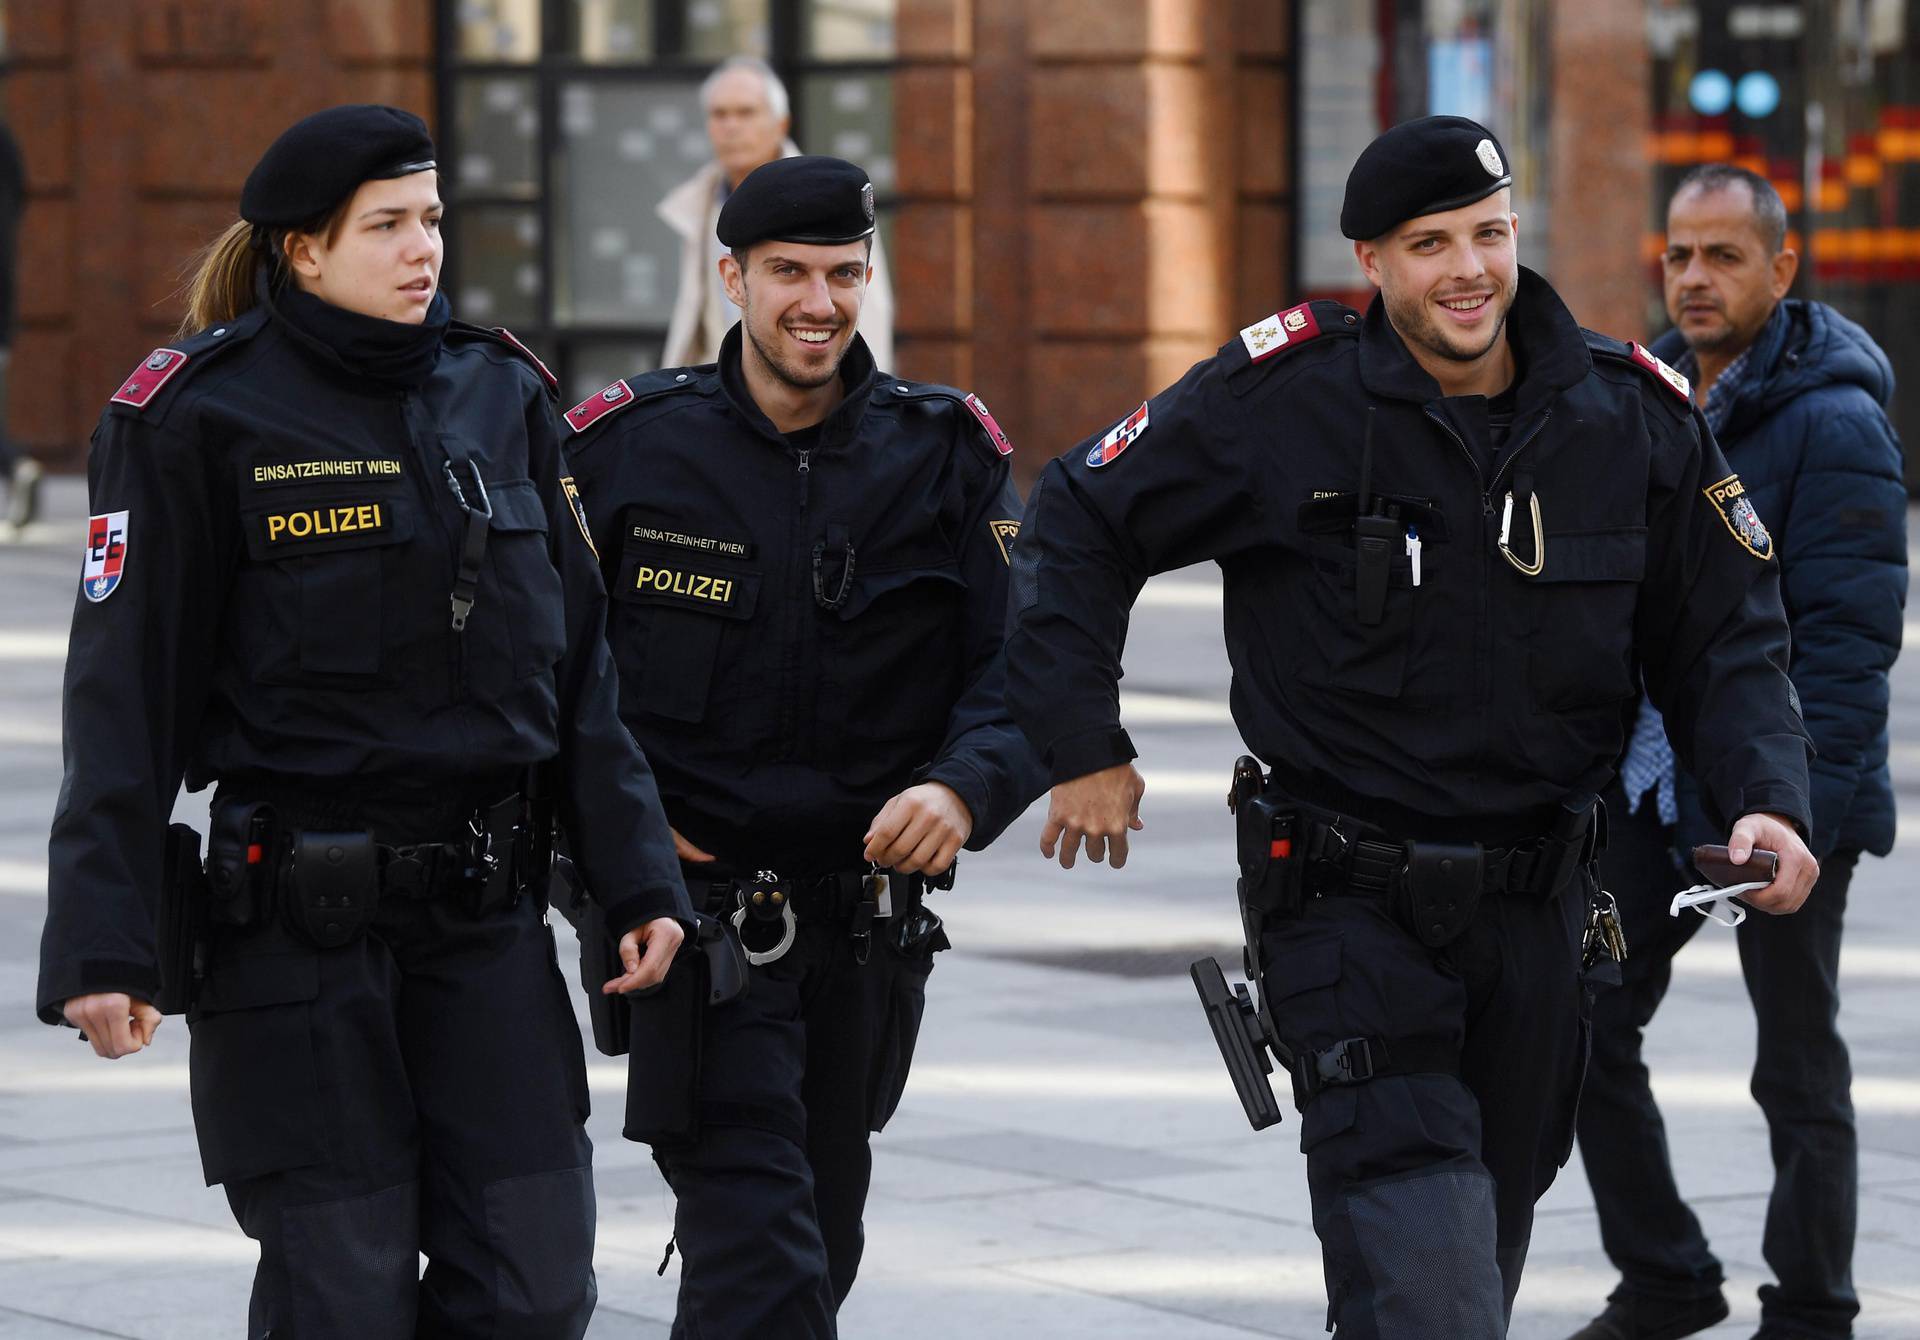 Cijeli je Beč danas modri: Gdje god se okreneš, Hrvati! Policija češlja sve, a potvrde ne pitaju...